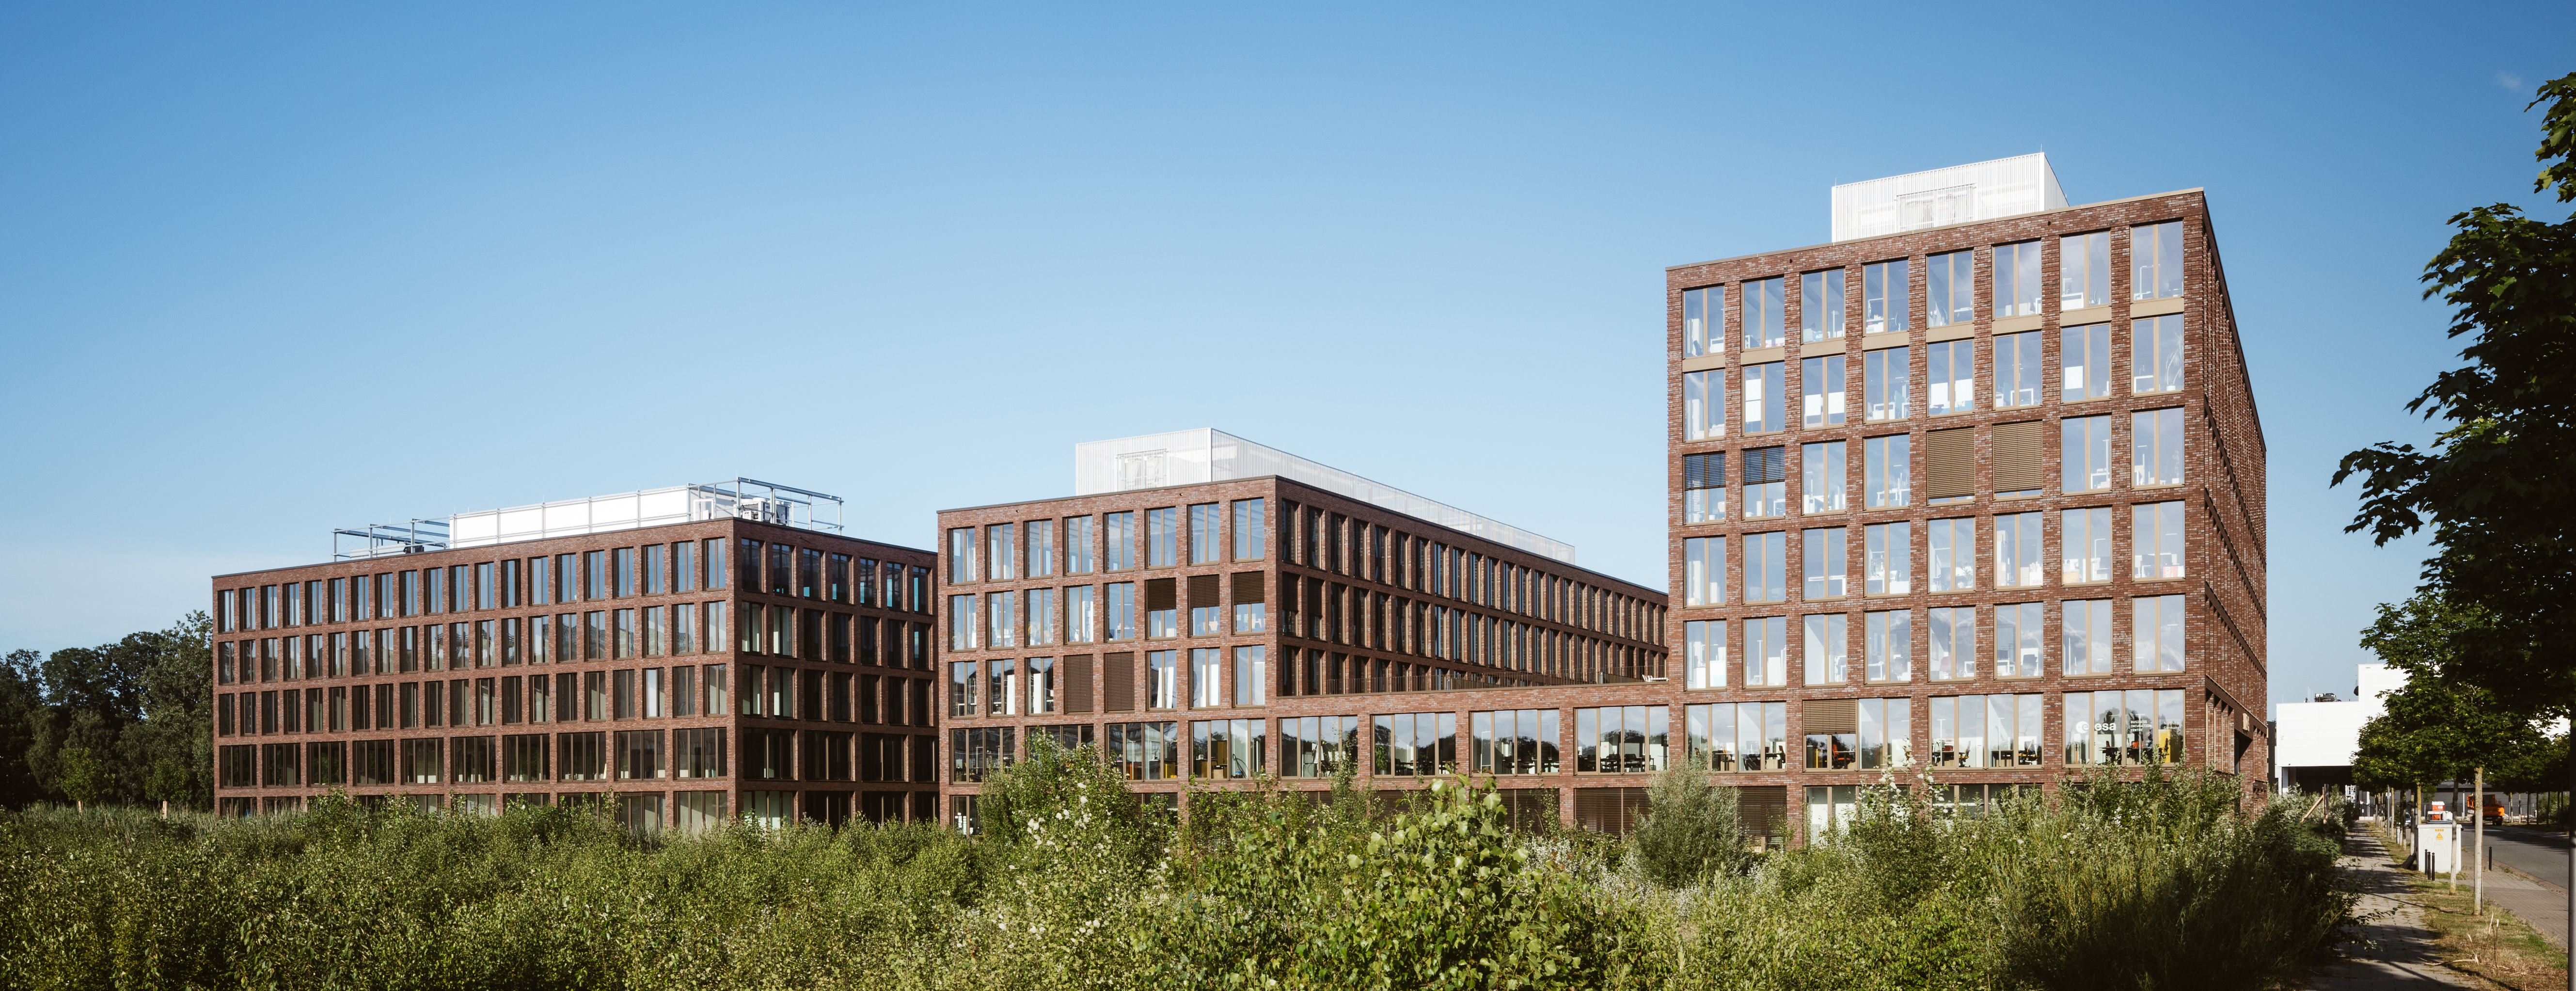 Ein großes Bürogebäude mit unterschiedlicher Höhe und zwischen zwei und sieben Stockwerken aus braunem Stein. - Quelle: WFB/Jan Meier